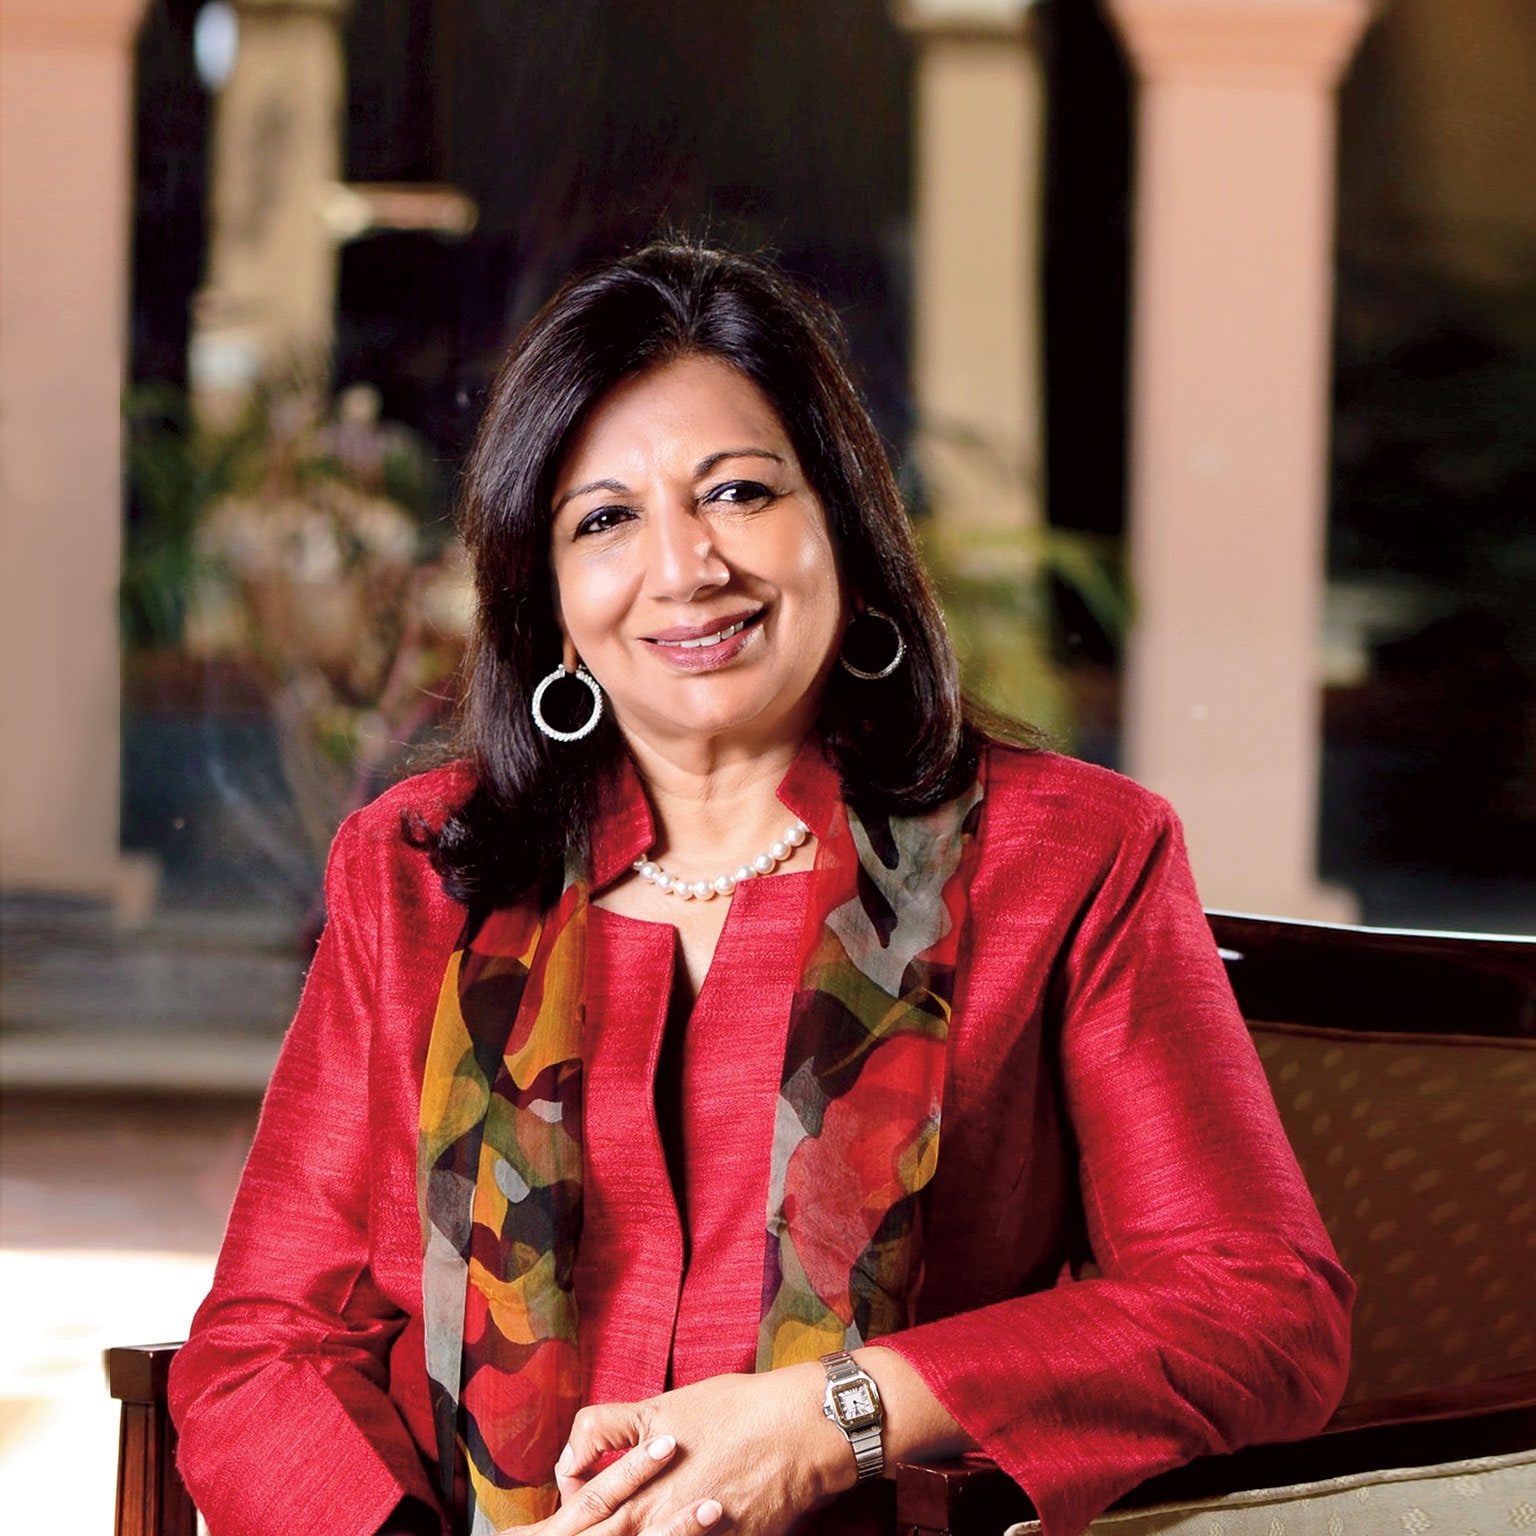 Wealthy Women List : रोशनी नादर भारतातील सर्वात श्रीमंत महिला, NYKAA च्या  फाल्गुनी नायरने किरण मुझुमदार शॉ यांना टाकले मागे - Majha Paper